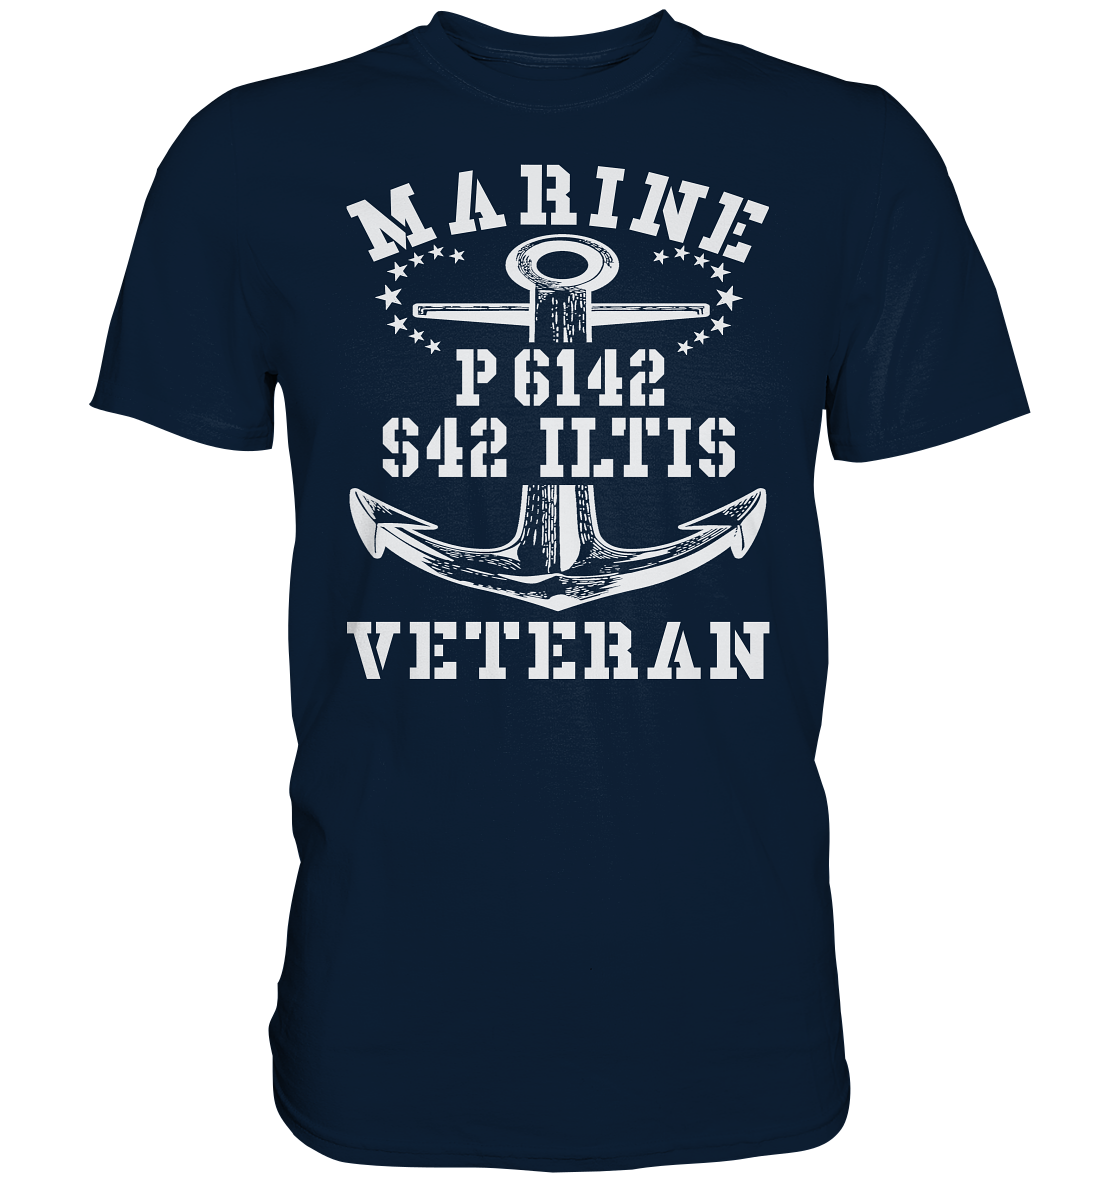 P6142 S42 ILTIS Marine Veteran - Premium Shirt